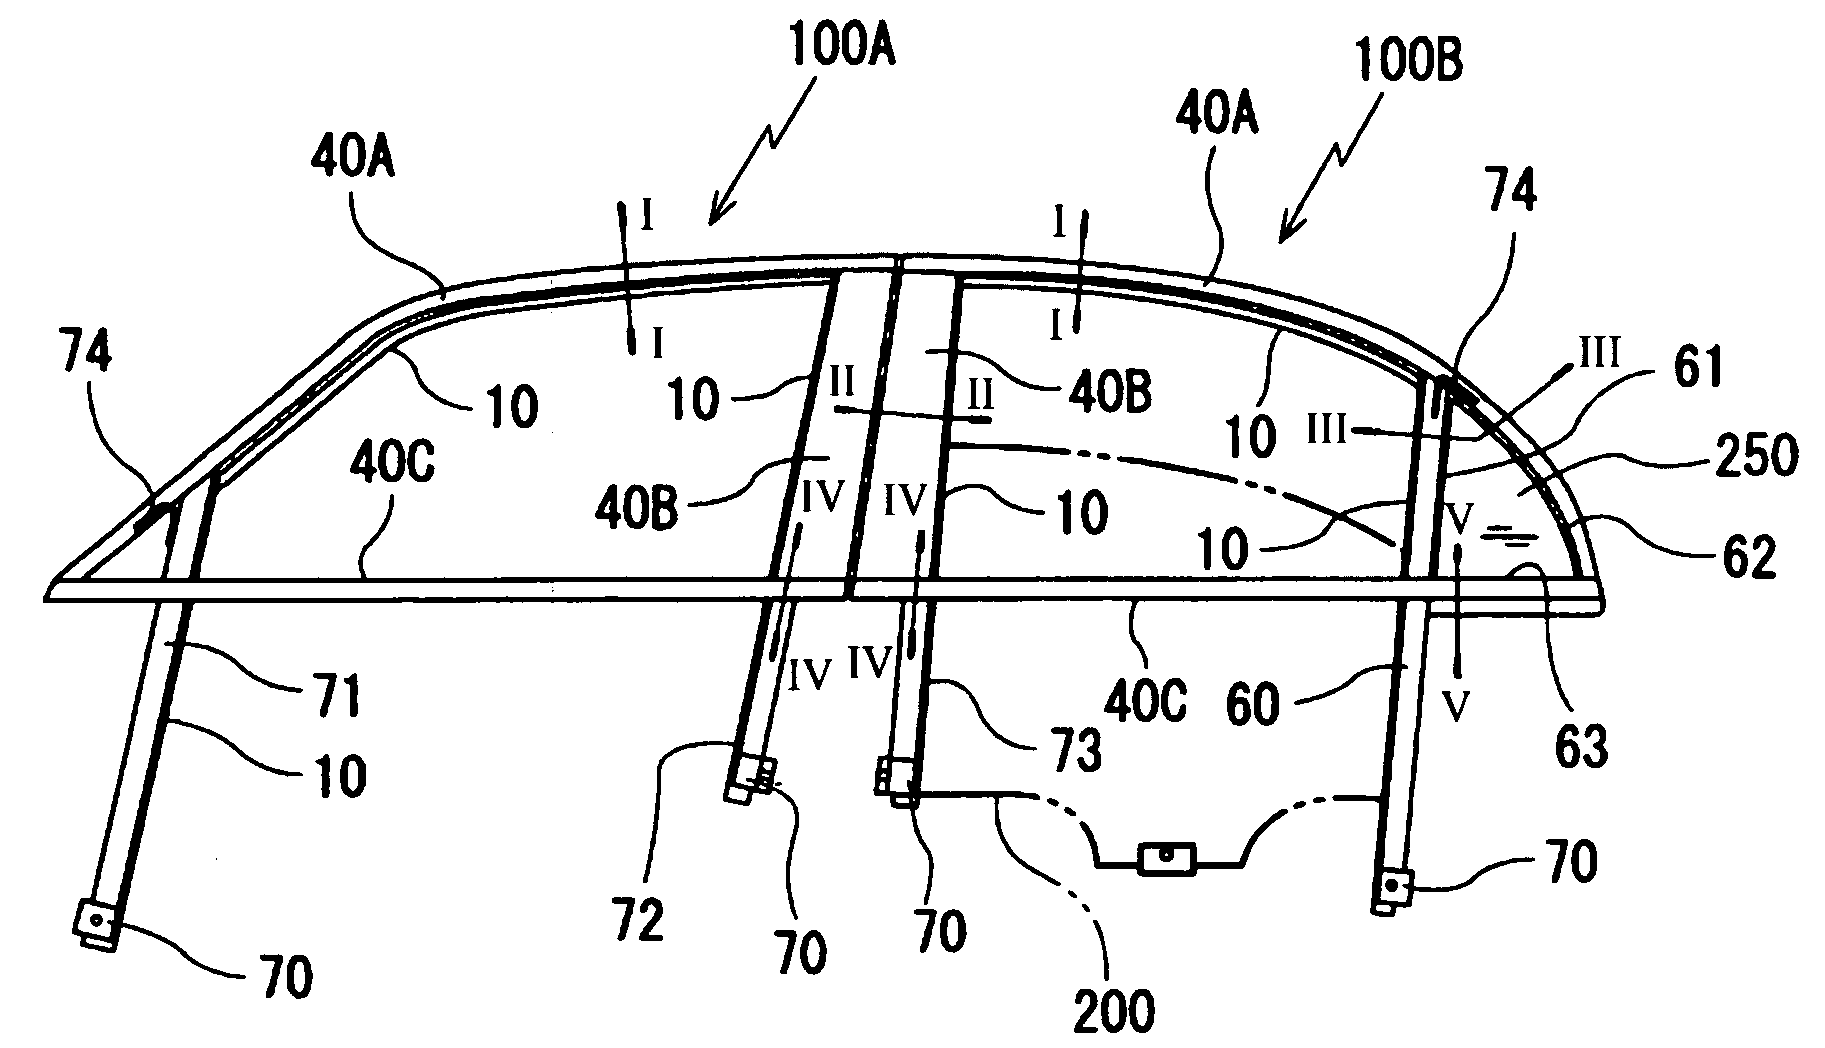 Method of assembling door parts on automobile door